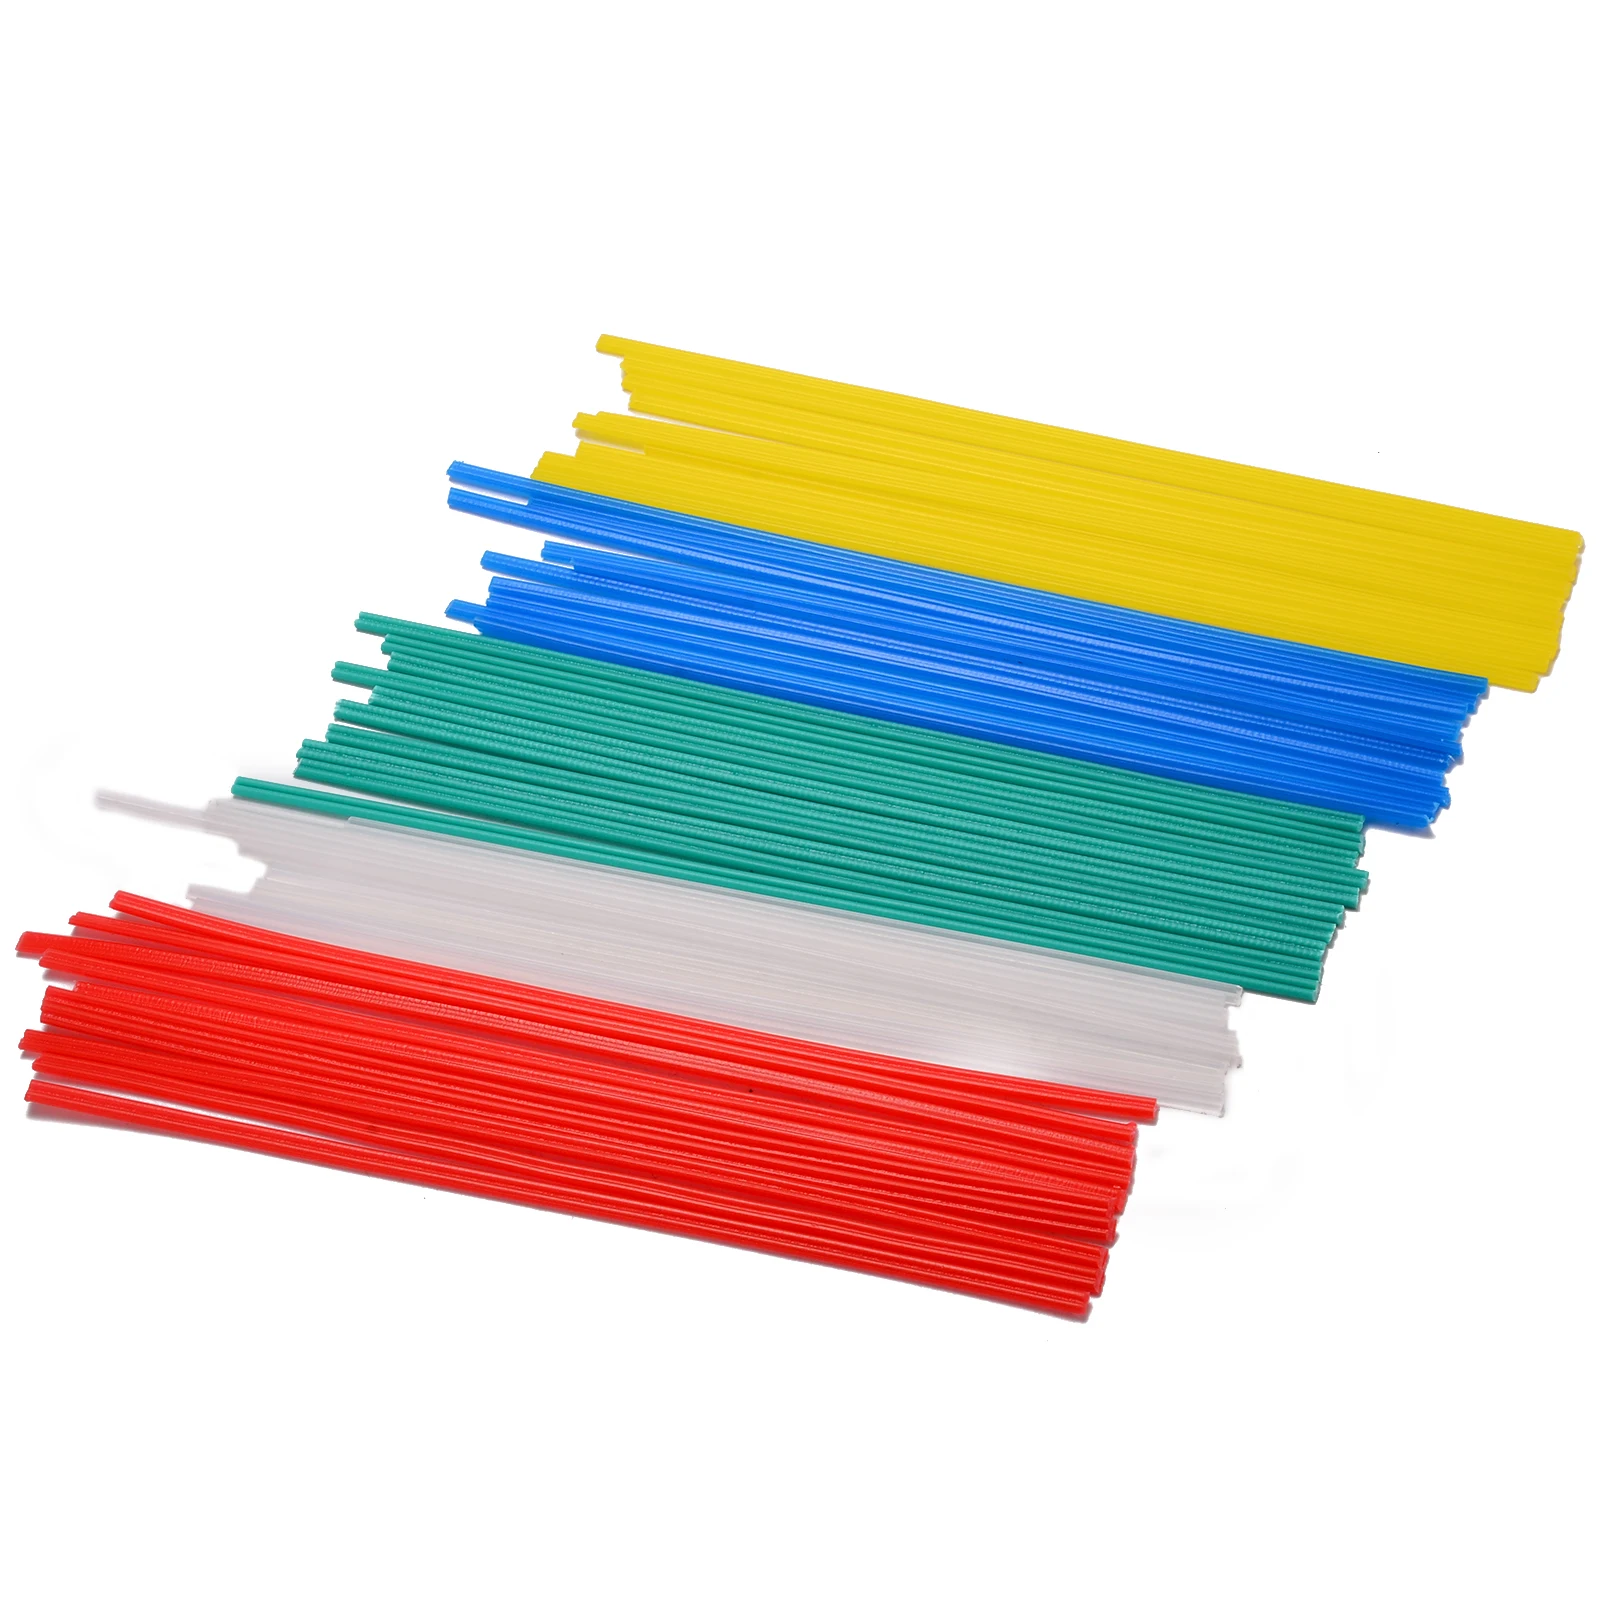 50Pcs Plastic Welding Rods Welder Sticks 25cm Length 5 Colors Blue/White/Yellow/Red/Green For Plastic Welder